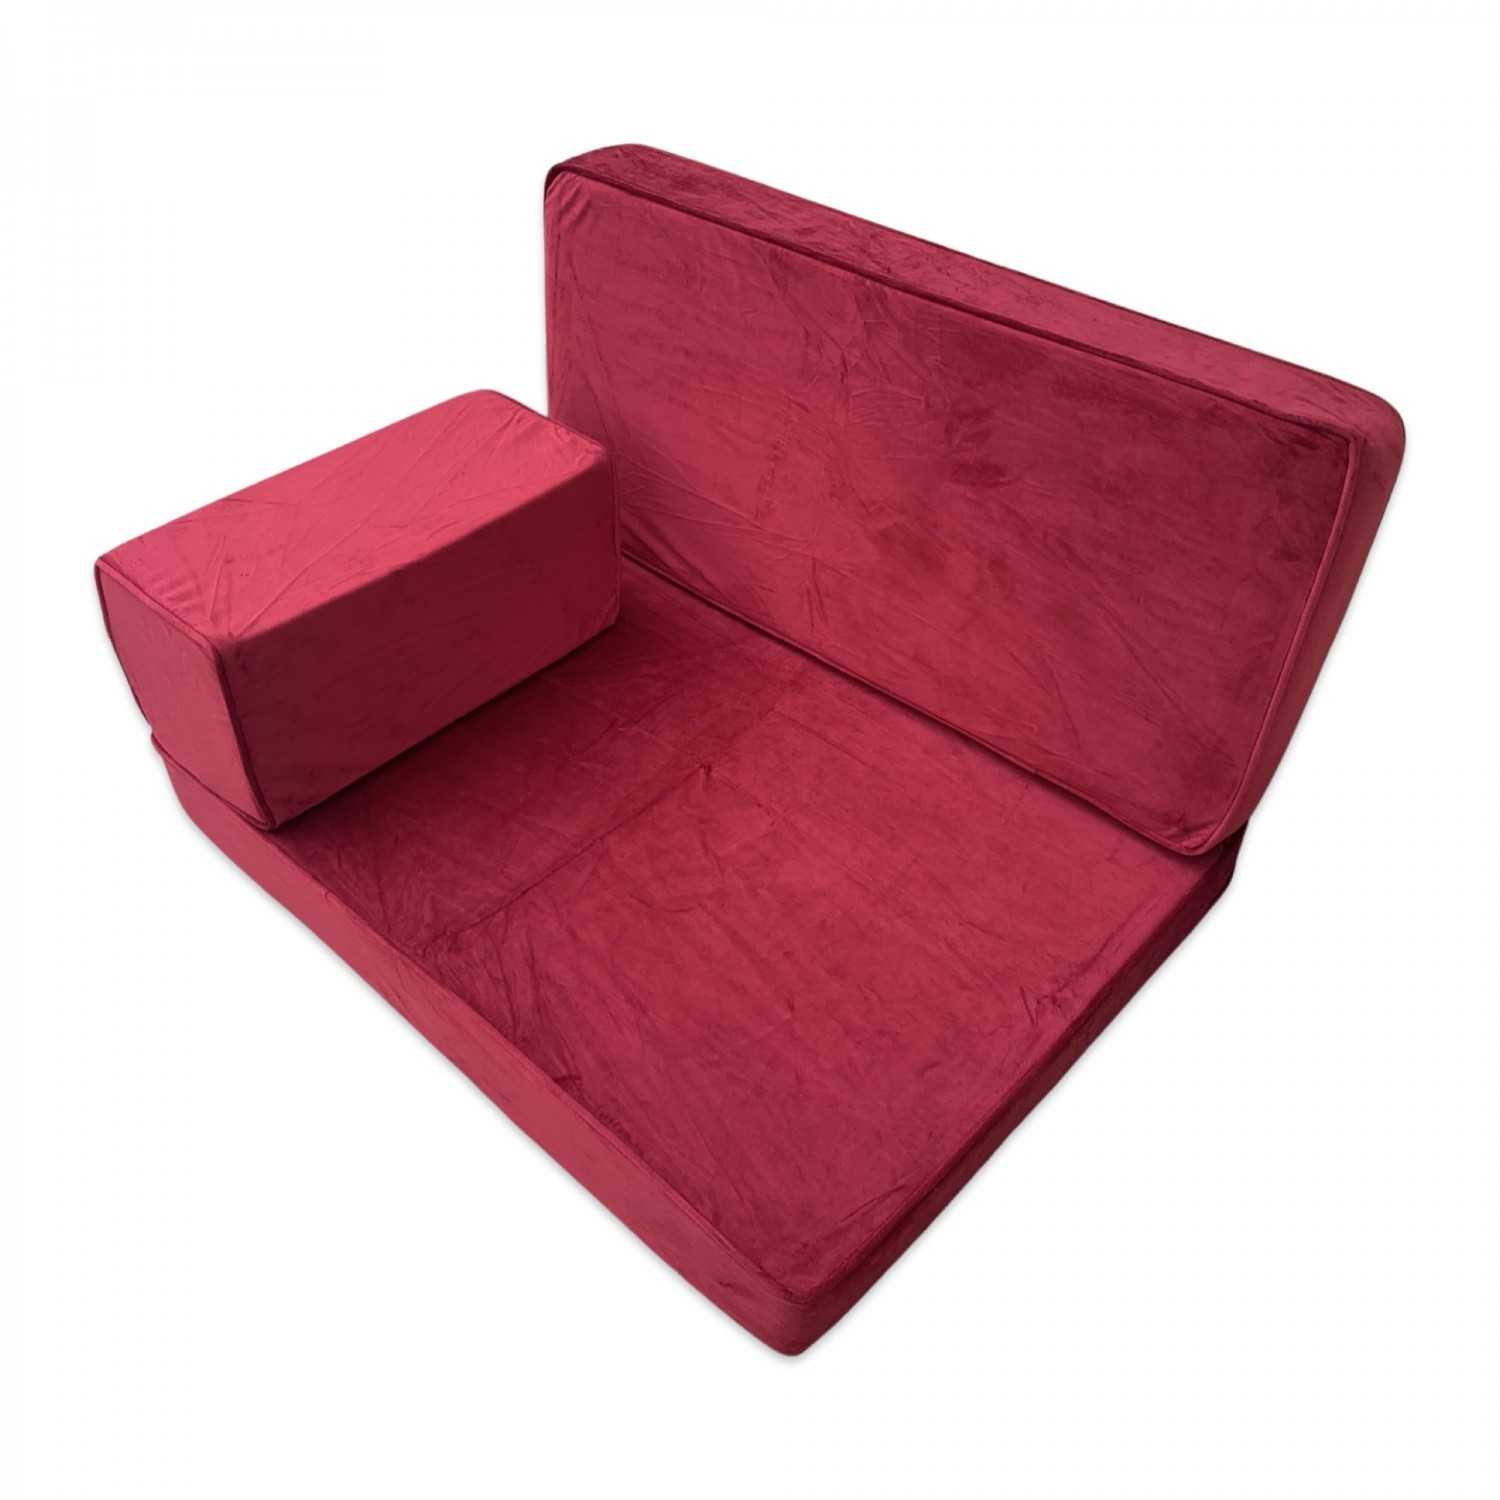 PLUSH Velvet Floor Seating Sofa Bench Cushions